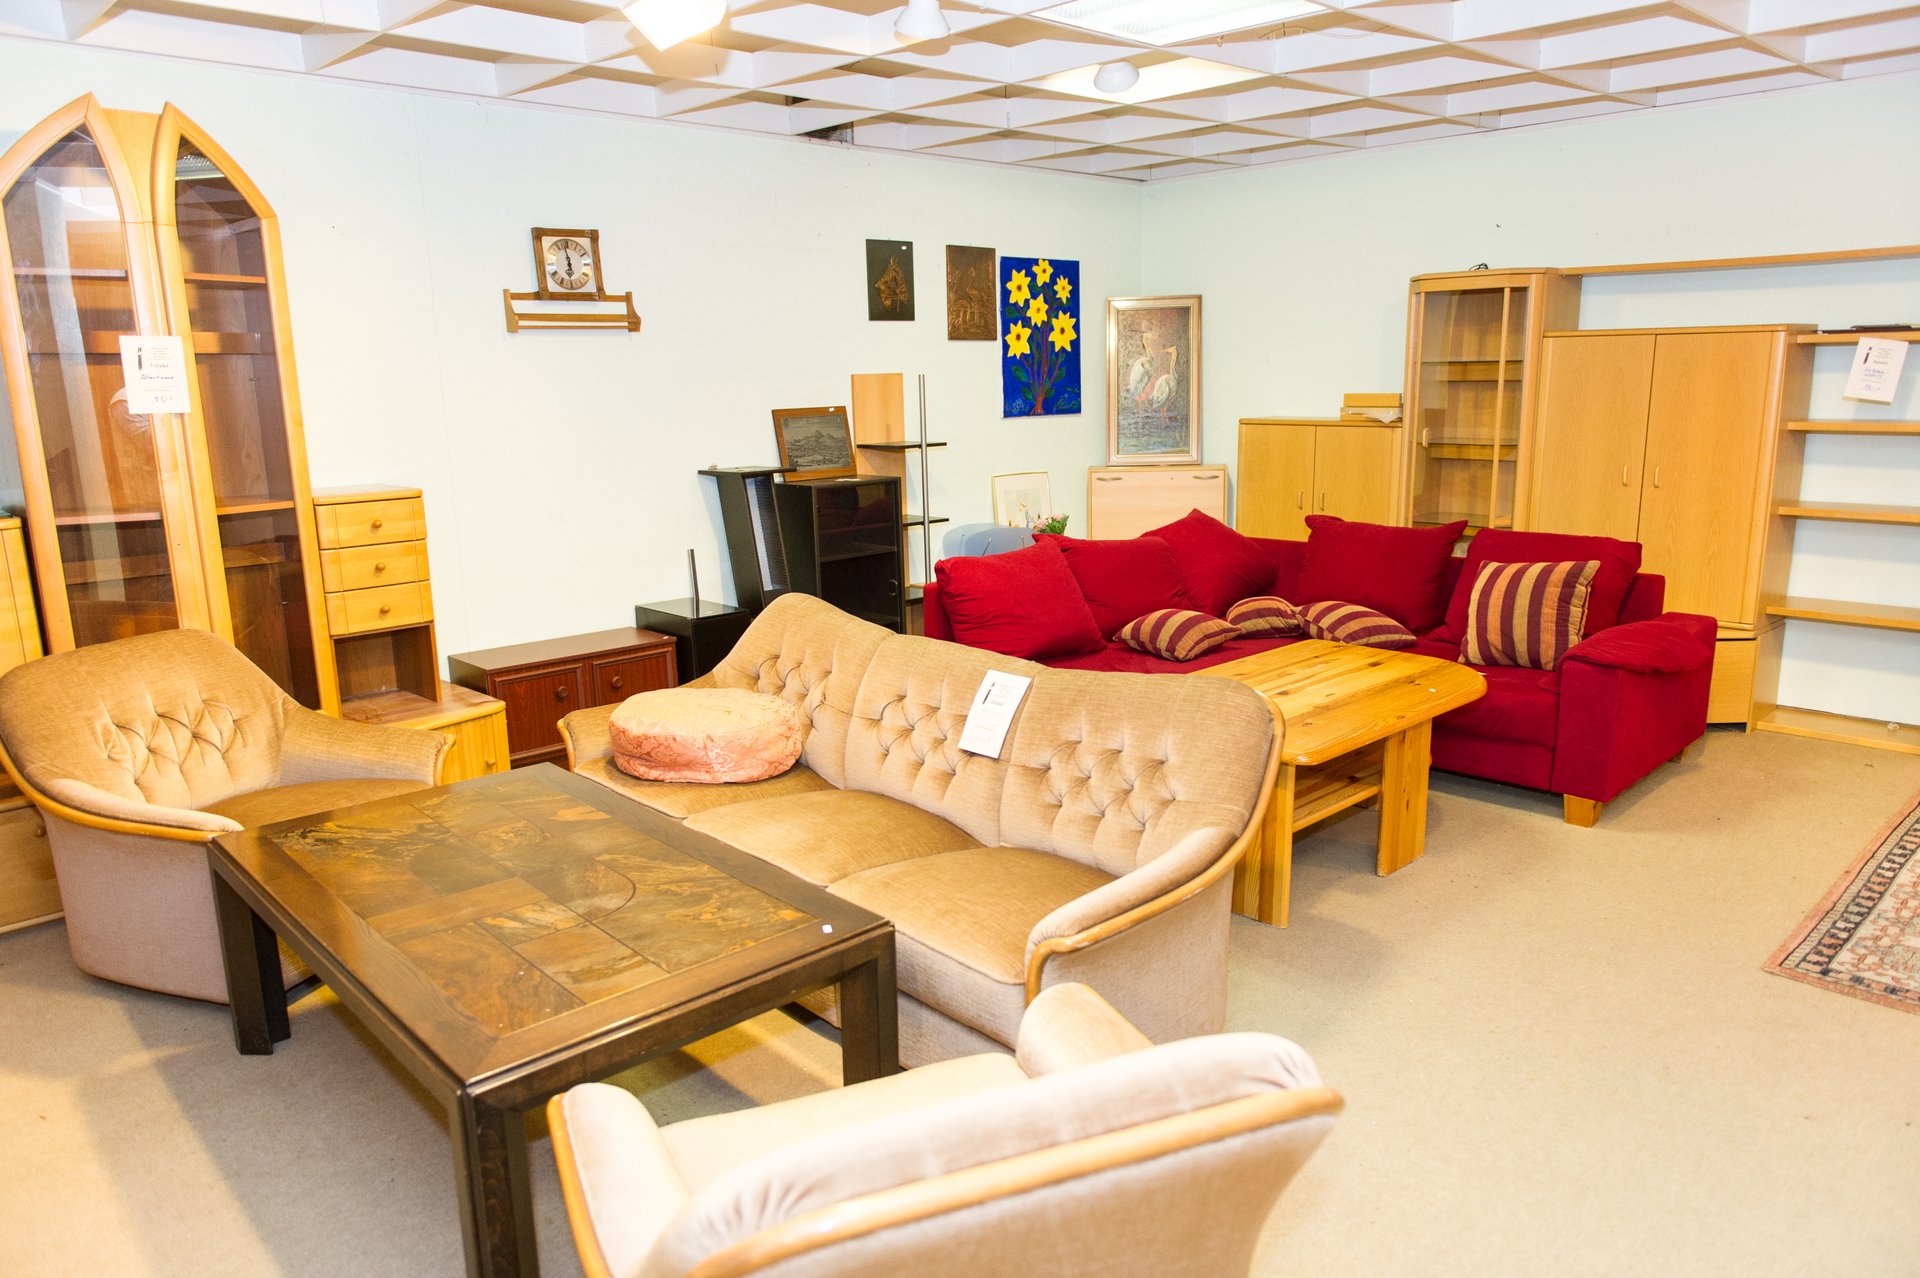 Ausstellungsraum: zwei Sofas, Sessel, Tische, Schränke und einige Bilder stehen im Raum oder hängen an der Wand